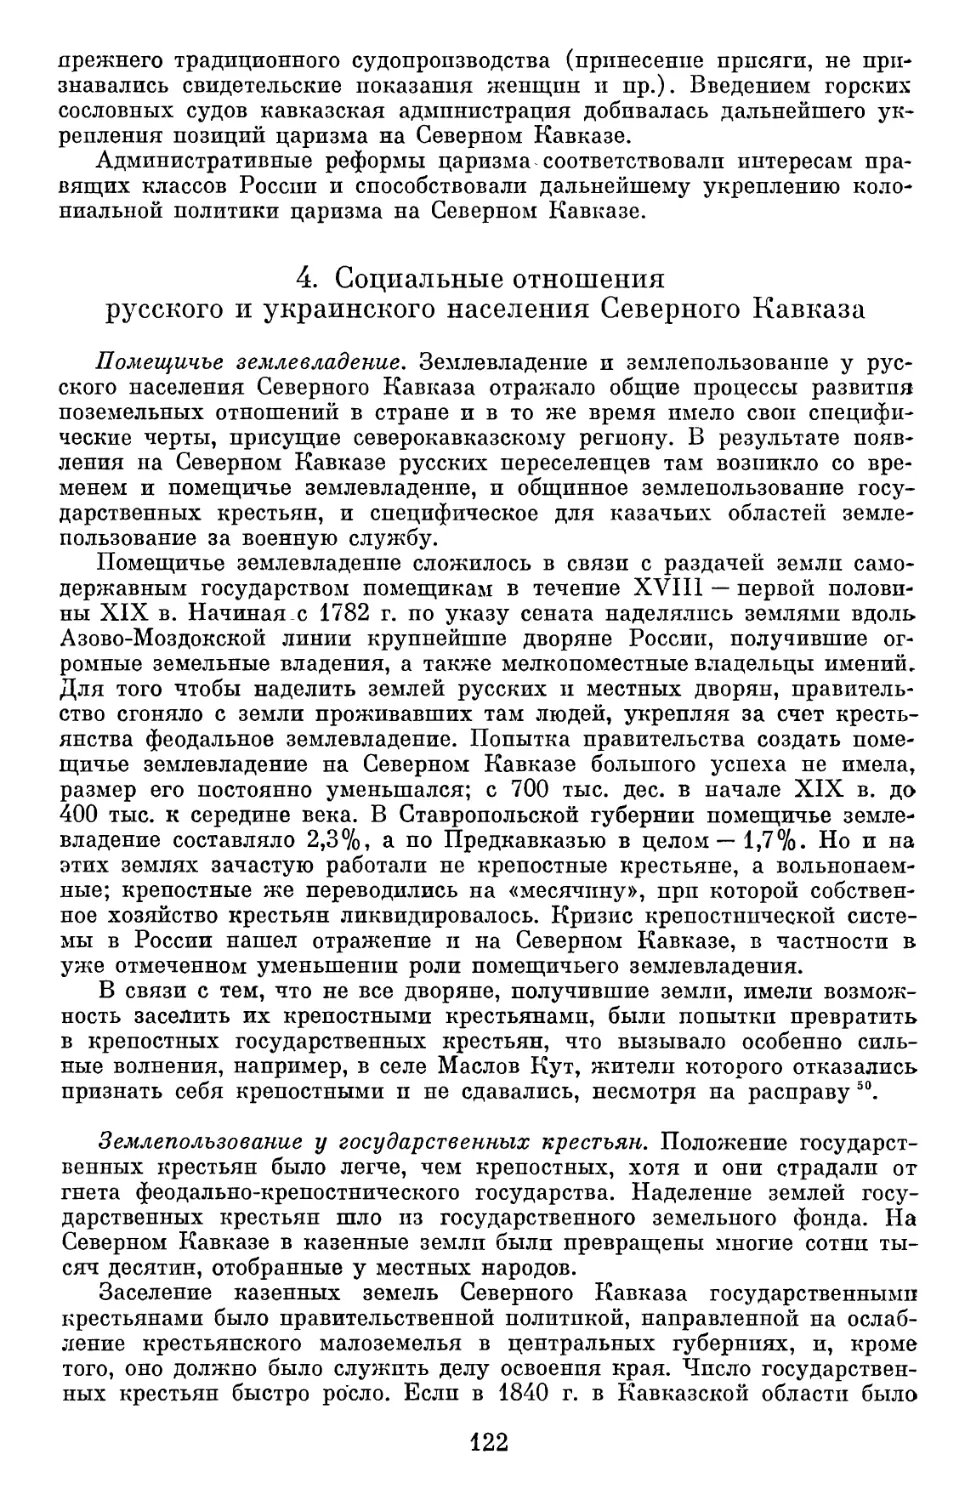 4. Социальные отношения русского и украинского населения Северного Кавказа